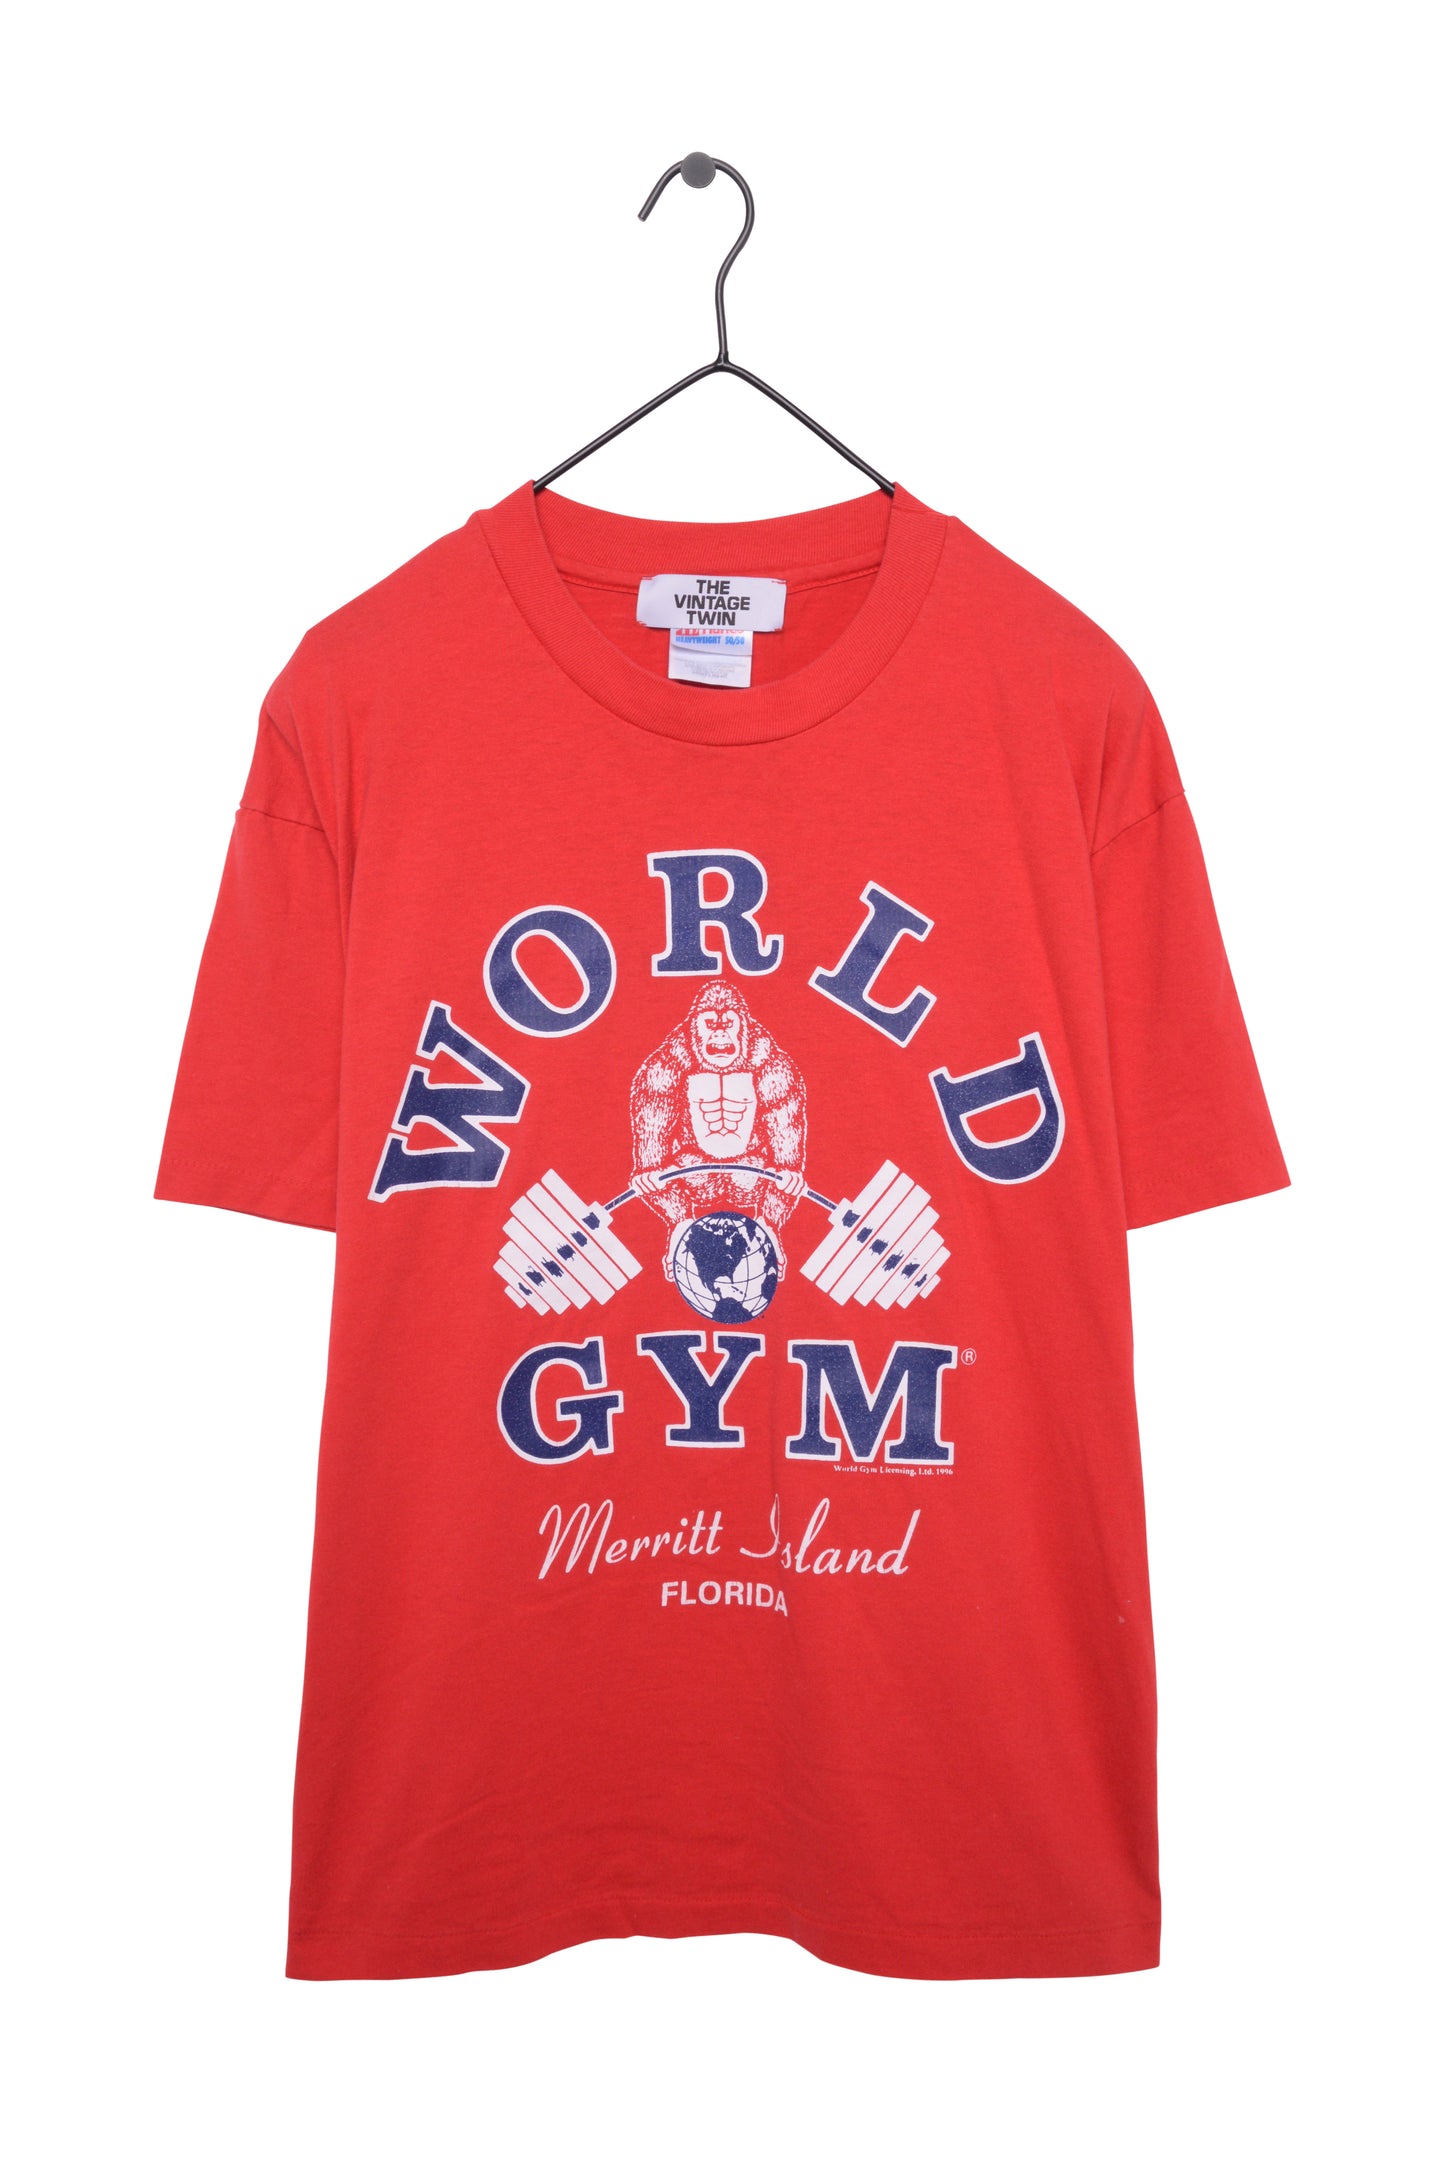 1996 World Gym Florida Tee